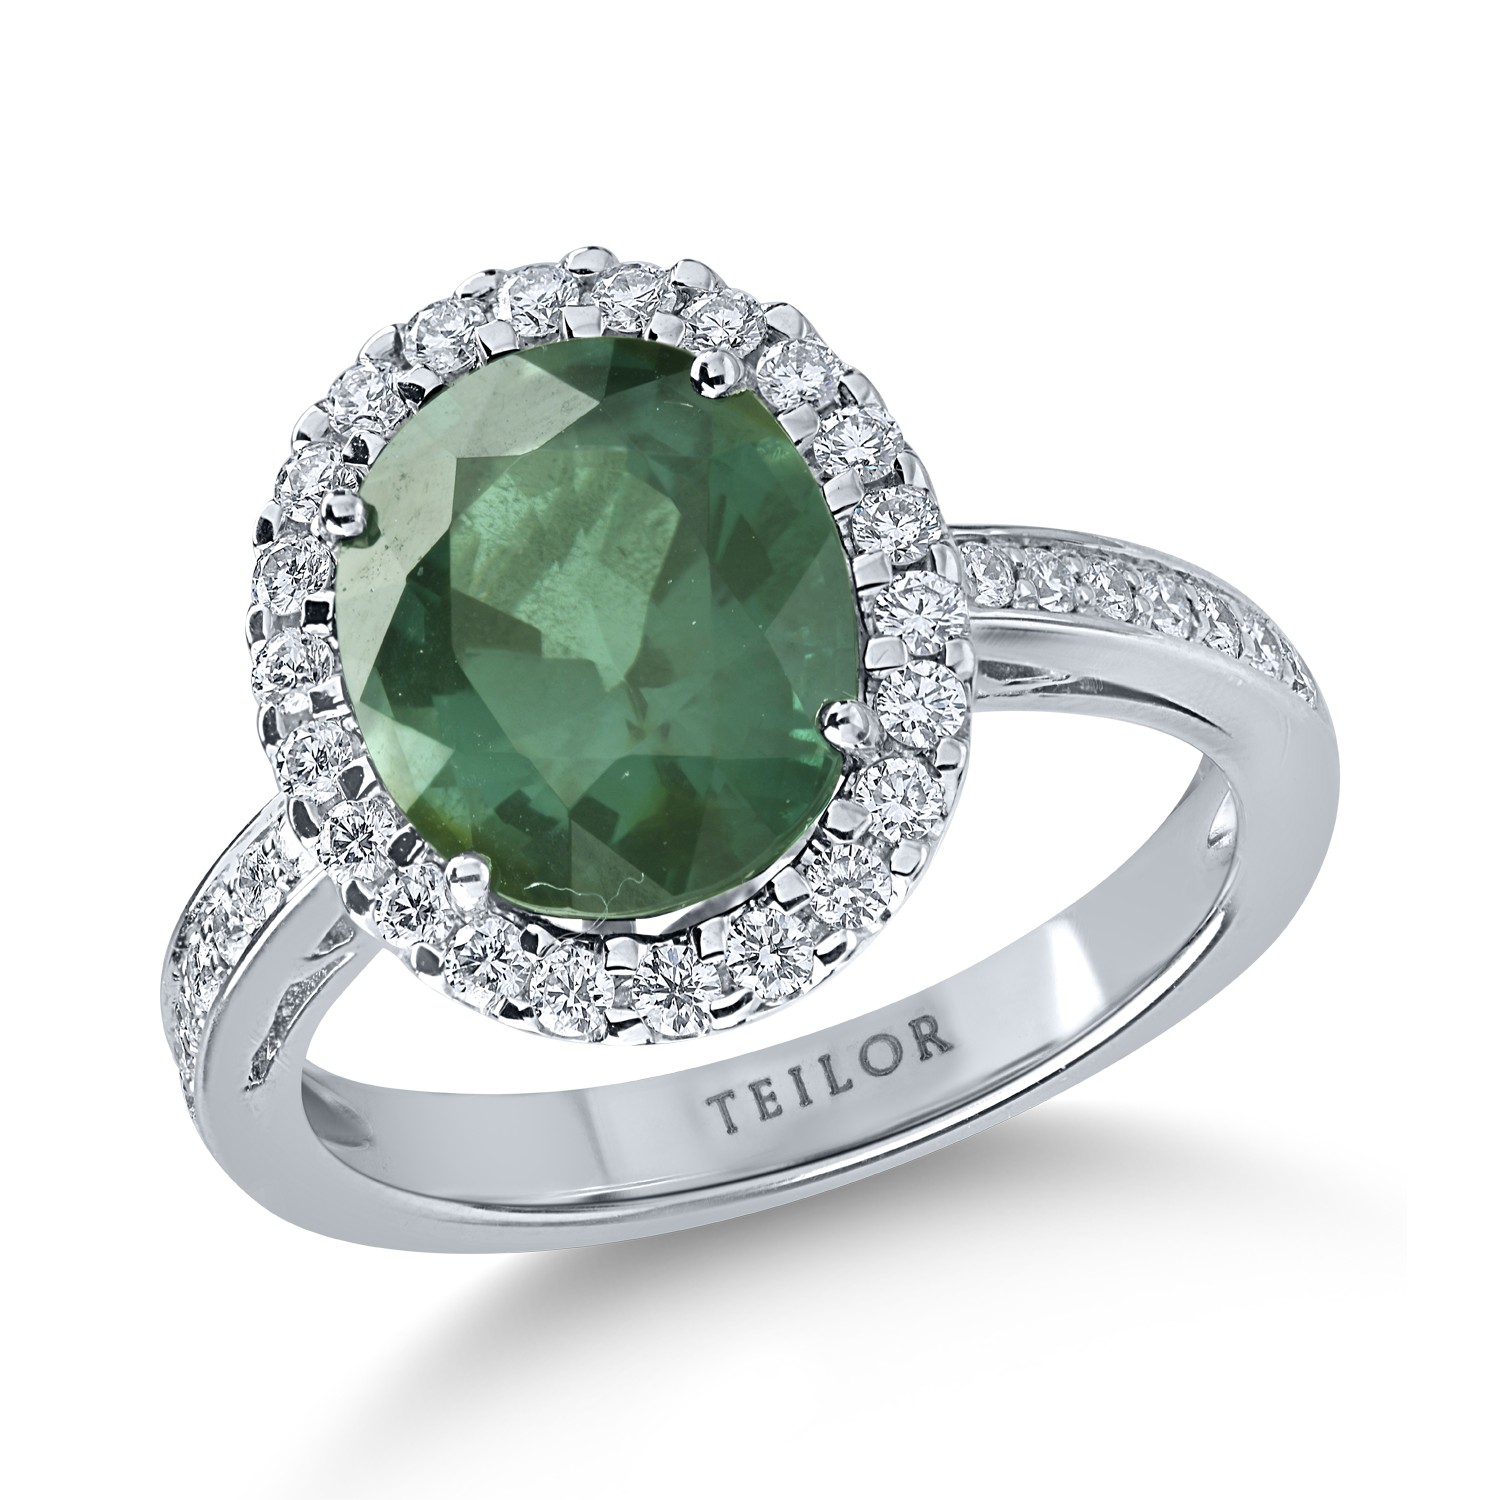 Inel din aur alb cu turmalina verde de 3.1ct si diamante de 0.4ct